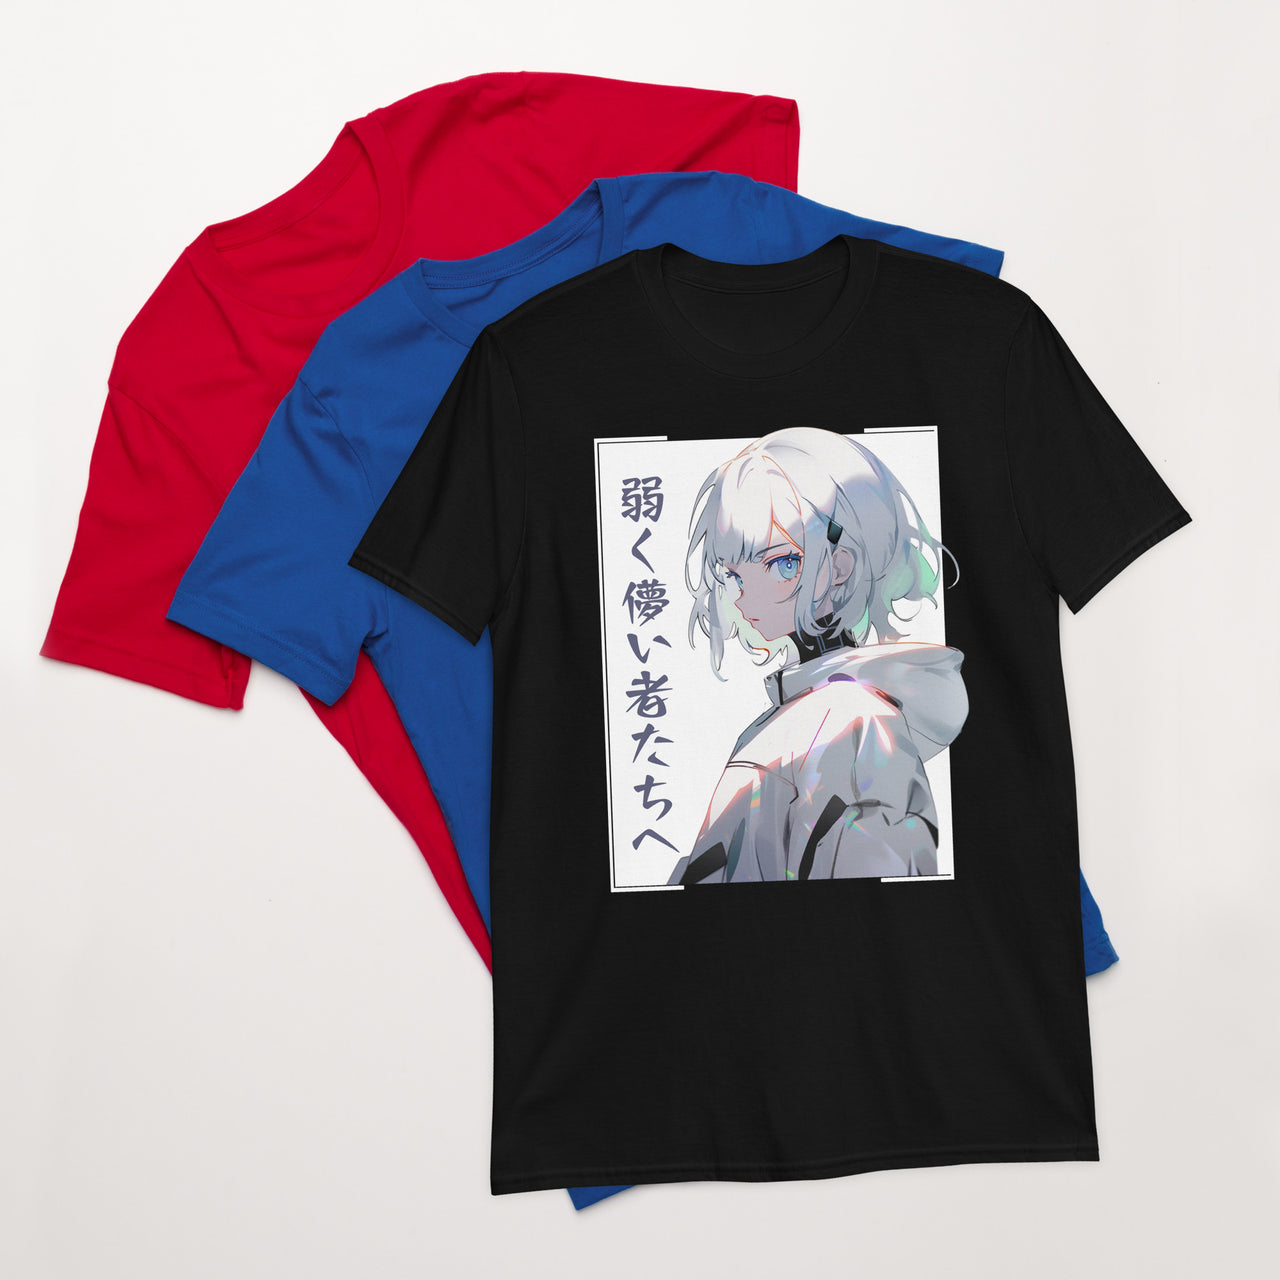 Strength in Weakness Japanese Anime Girl T-Shirt